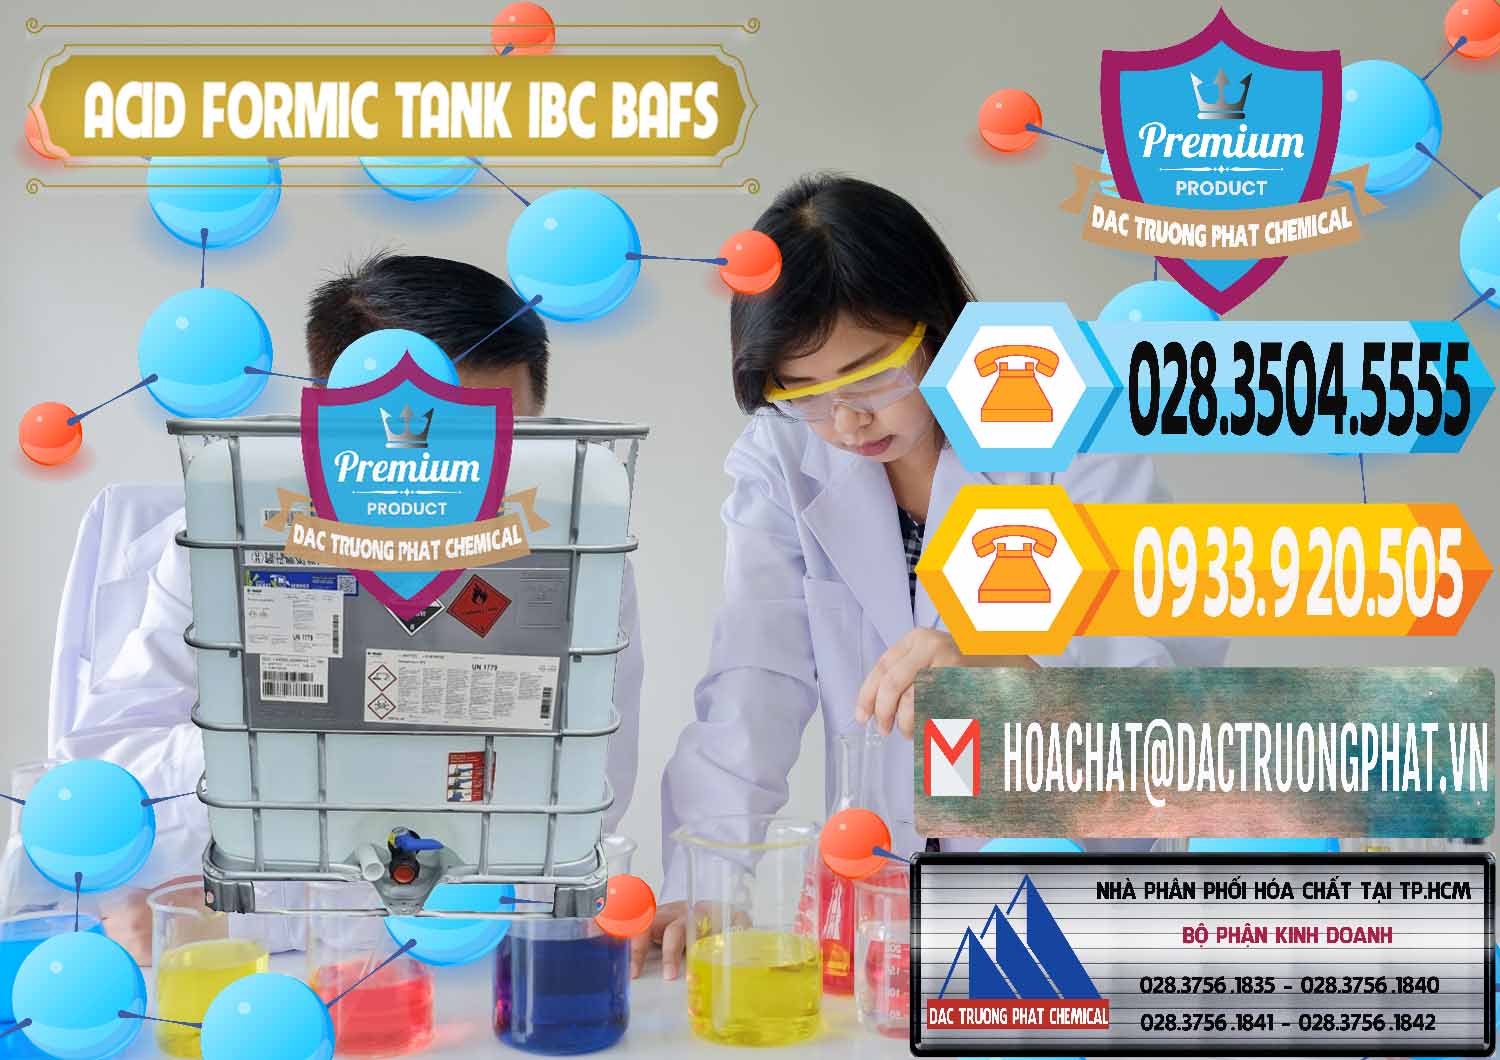 Đơn vị chuyên bán và phân phối Acid Formic - Axit Formic Tank - Bồn IBC BASF Đức - 0366 - Công ty chuyên bán & phân phối hóa chất tại TP.HCM - hoachattayrua.net